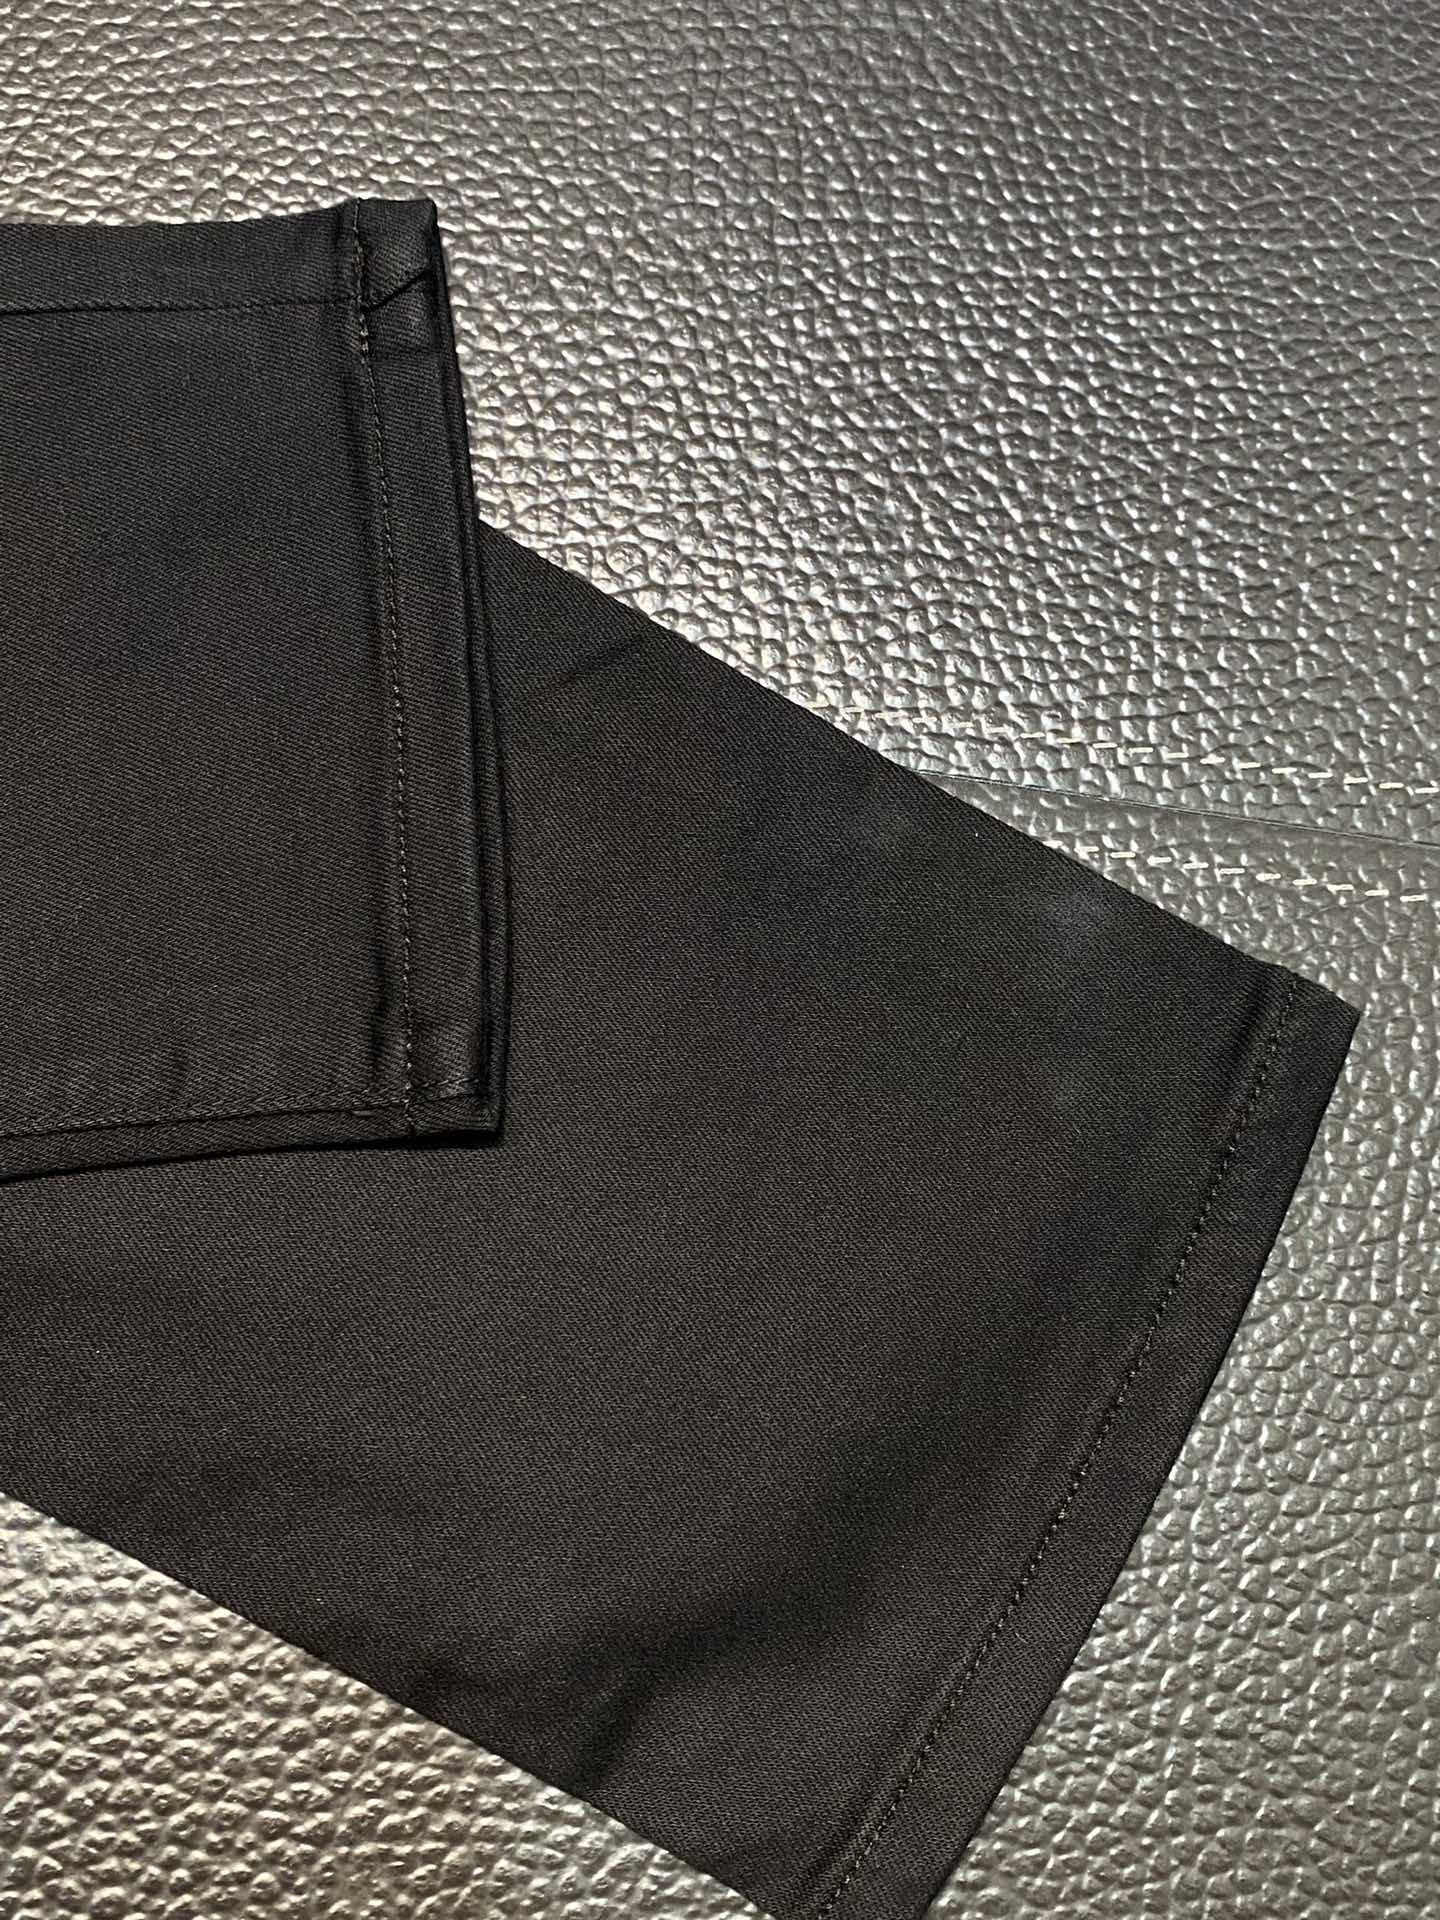 Prada普拉达独家专供新款休闲牛仔裤高端版本！专柜定制面料透气舒适度高细节无可挑剔品牌元素设计理念体现